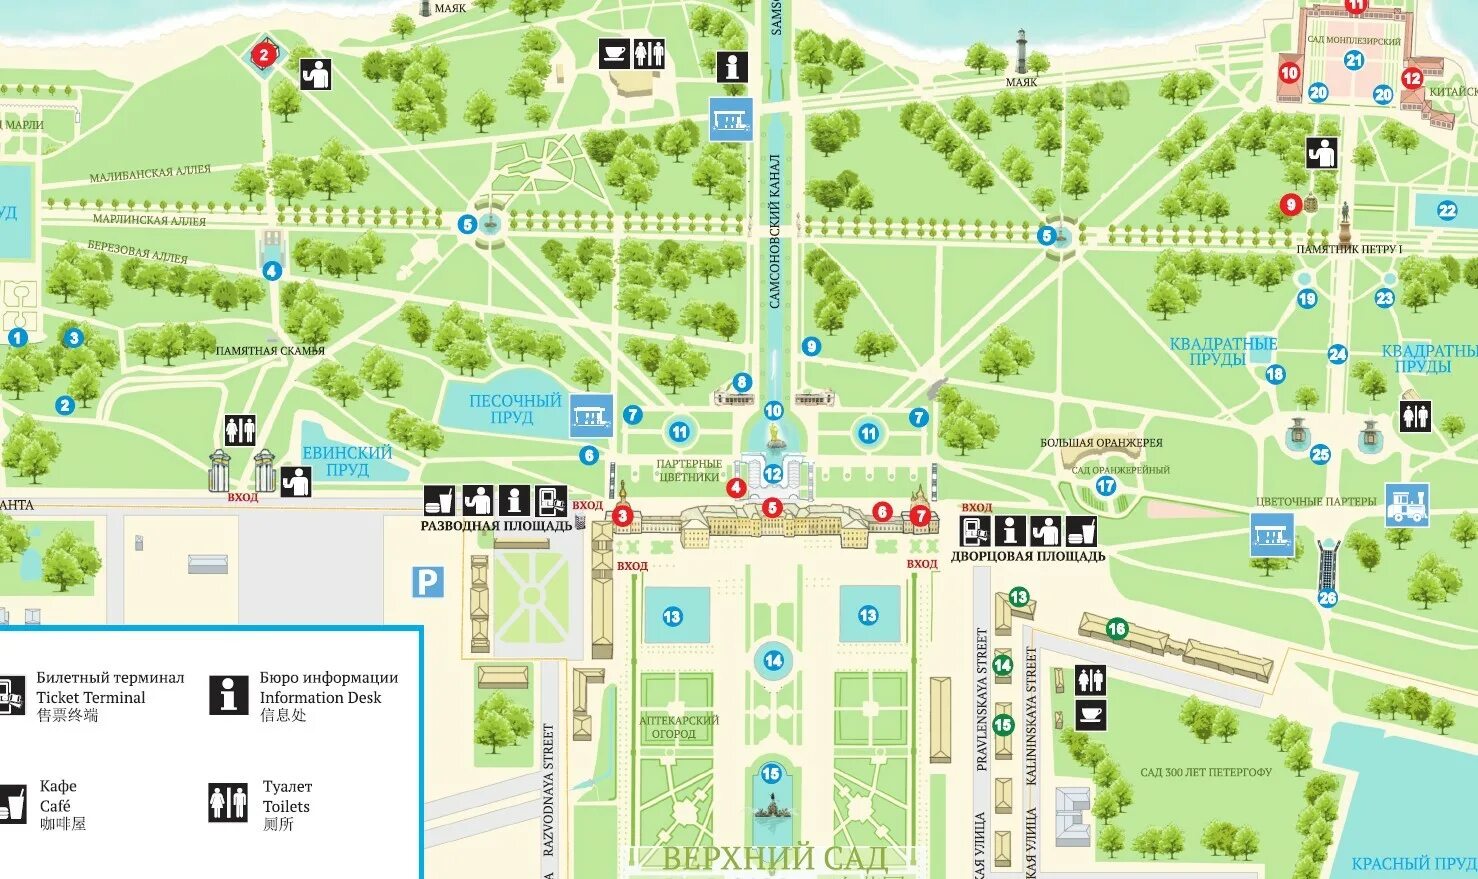 Схема Петергофа Нижний парк с фонтанами. Петродворец план парка. Петергоф схема парка. Карта парка Петергоф Нижний парк.